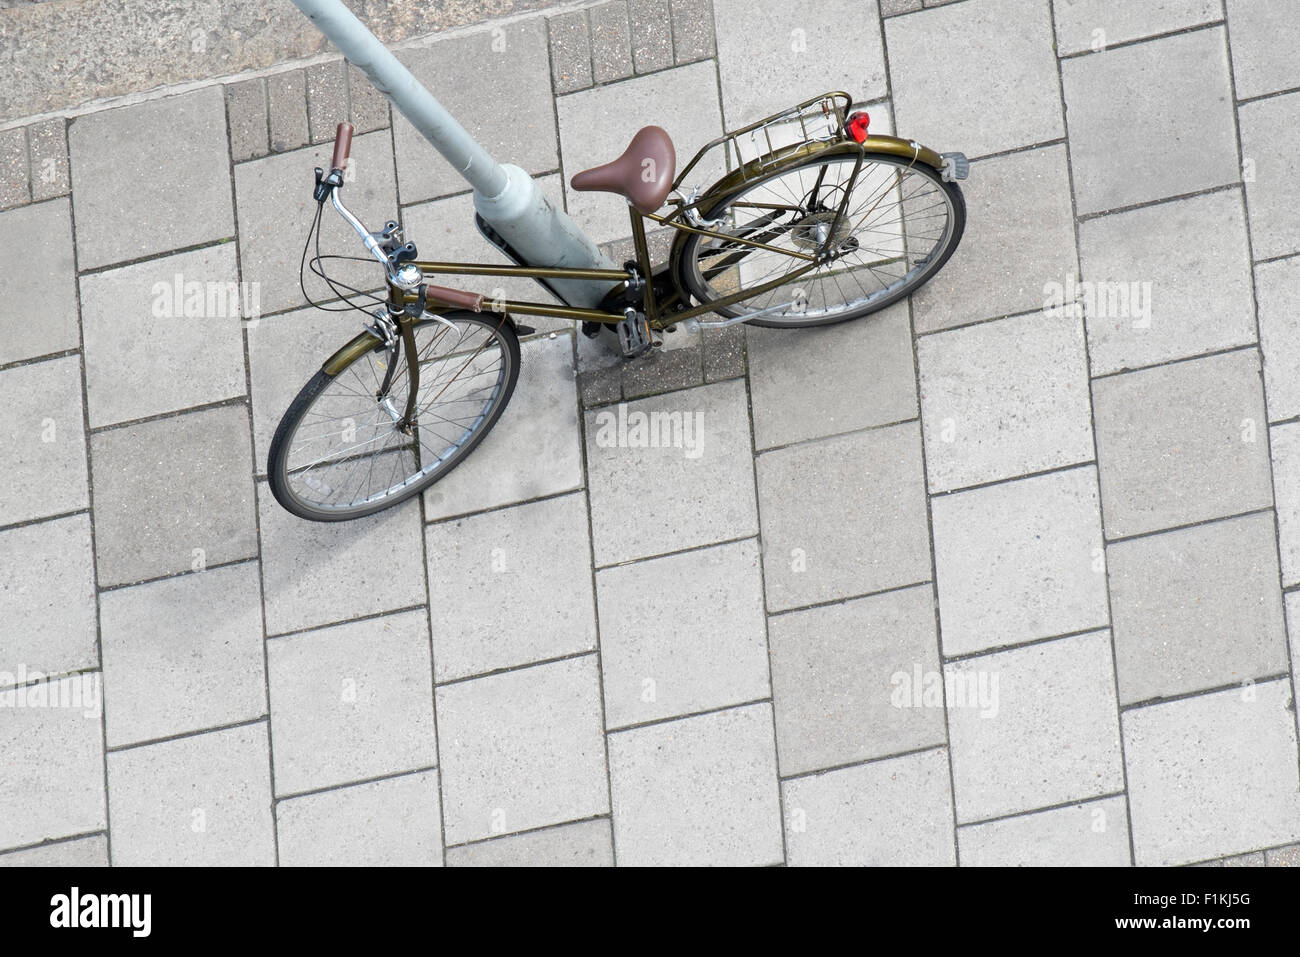 Alto mirador de bicicleta inclinada contra lampost, el Mornington Crescent, London Foto de stock